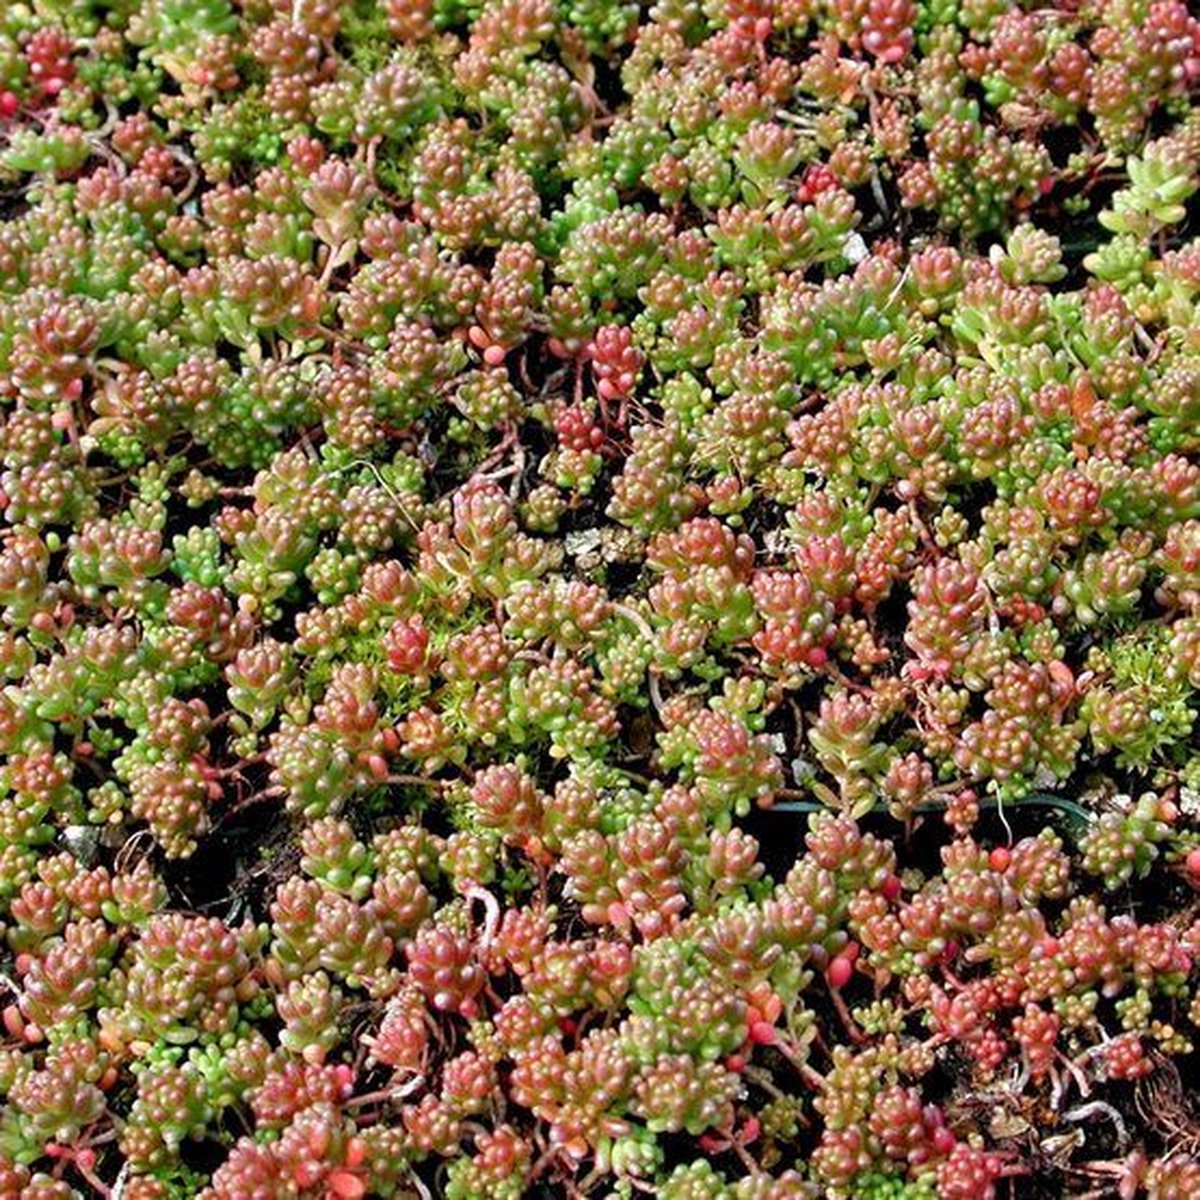 50 x Vetkruid of Muurpeper Rood|Groen - Bodembedekker Wintergroen - Sedum album 'Coral Carpet' in 9x9cm pot met hoogte 5-10cm